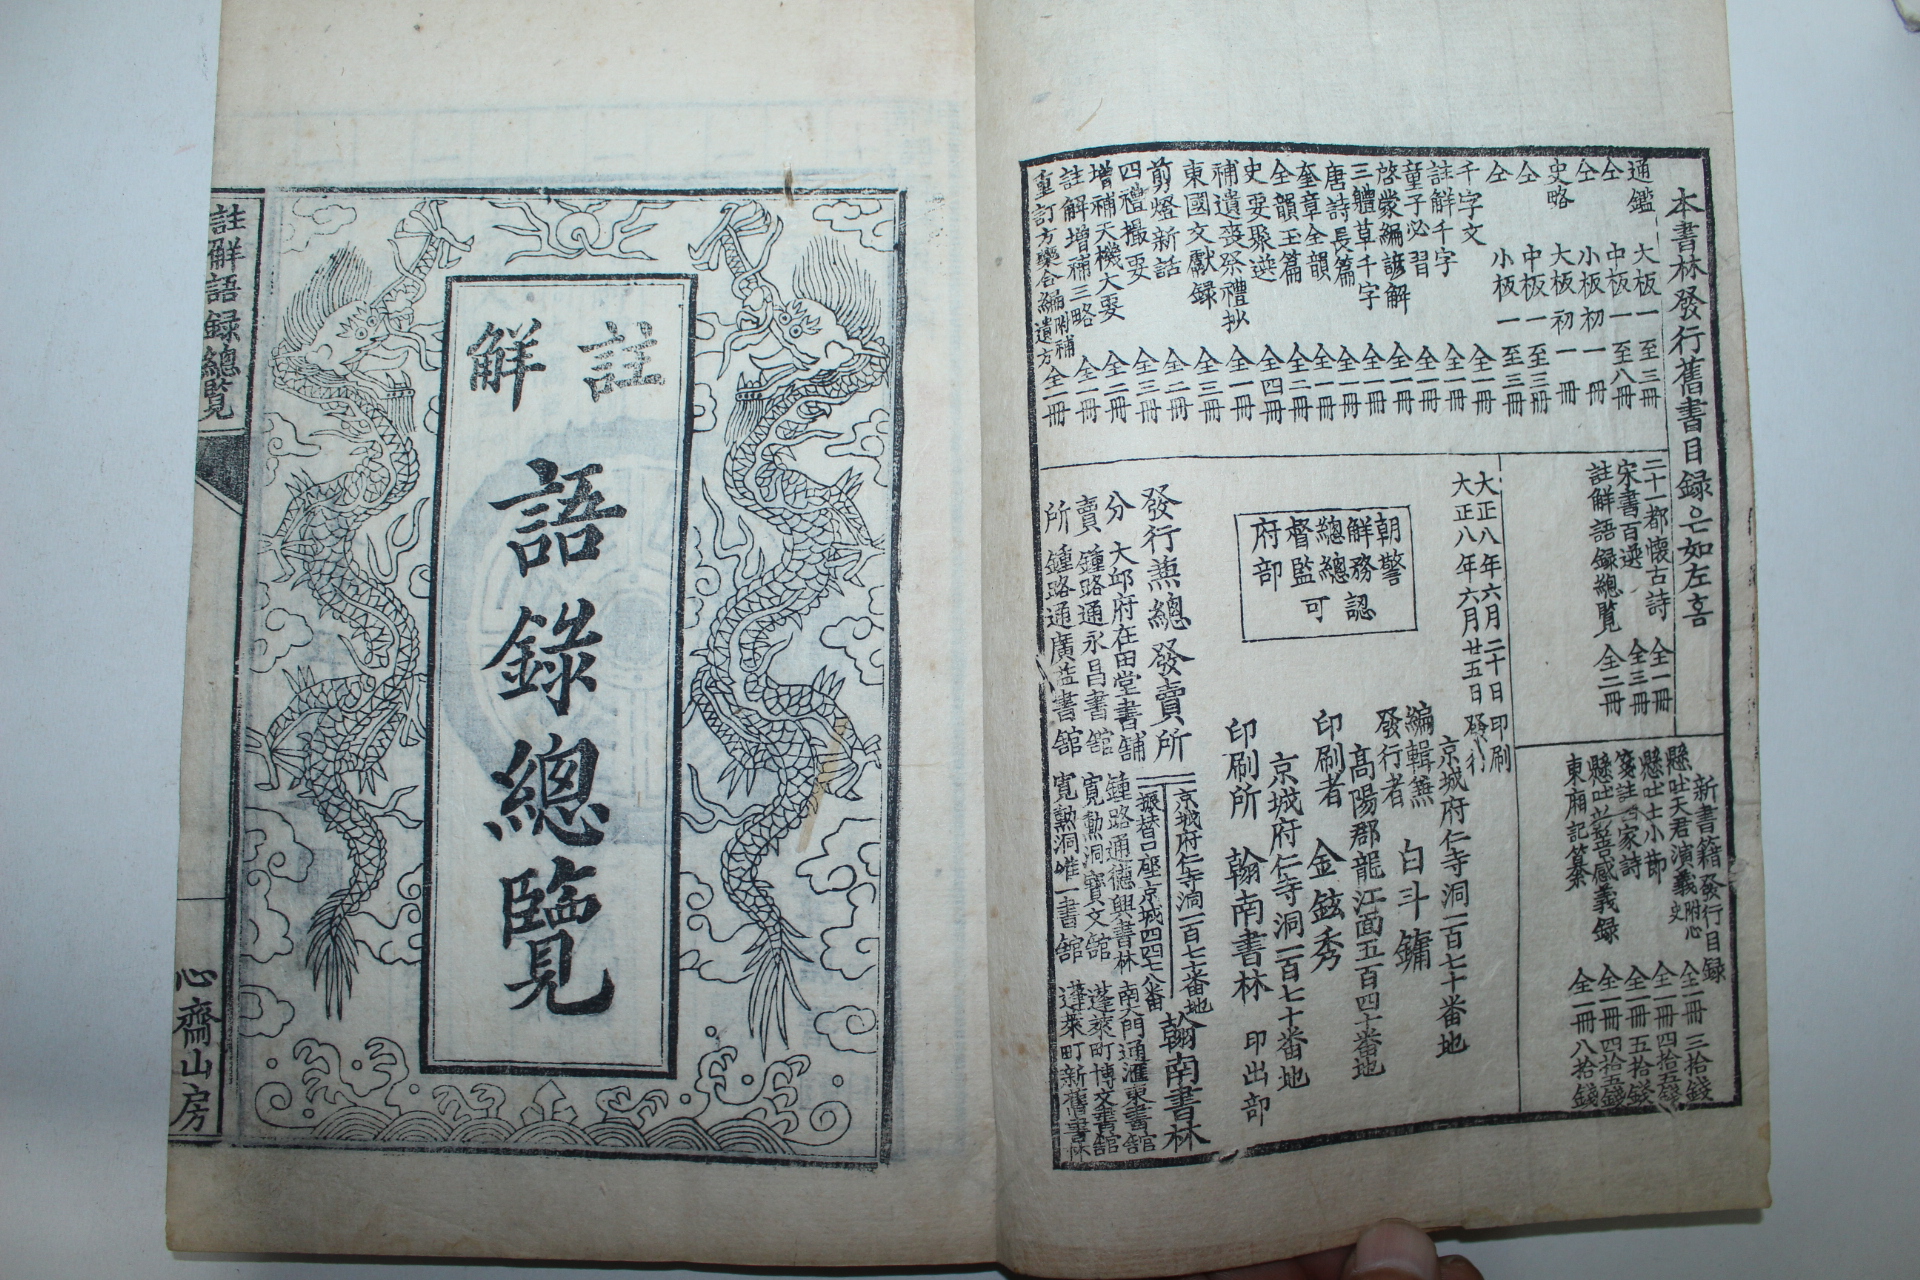 1919년 목판본 백두용(白斗鏞) 주해어록총람(註解語錄總覽) 2책완질